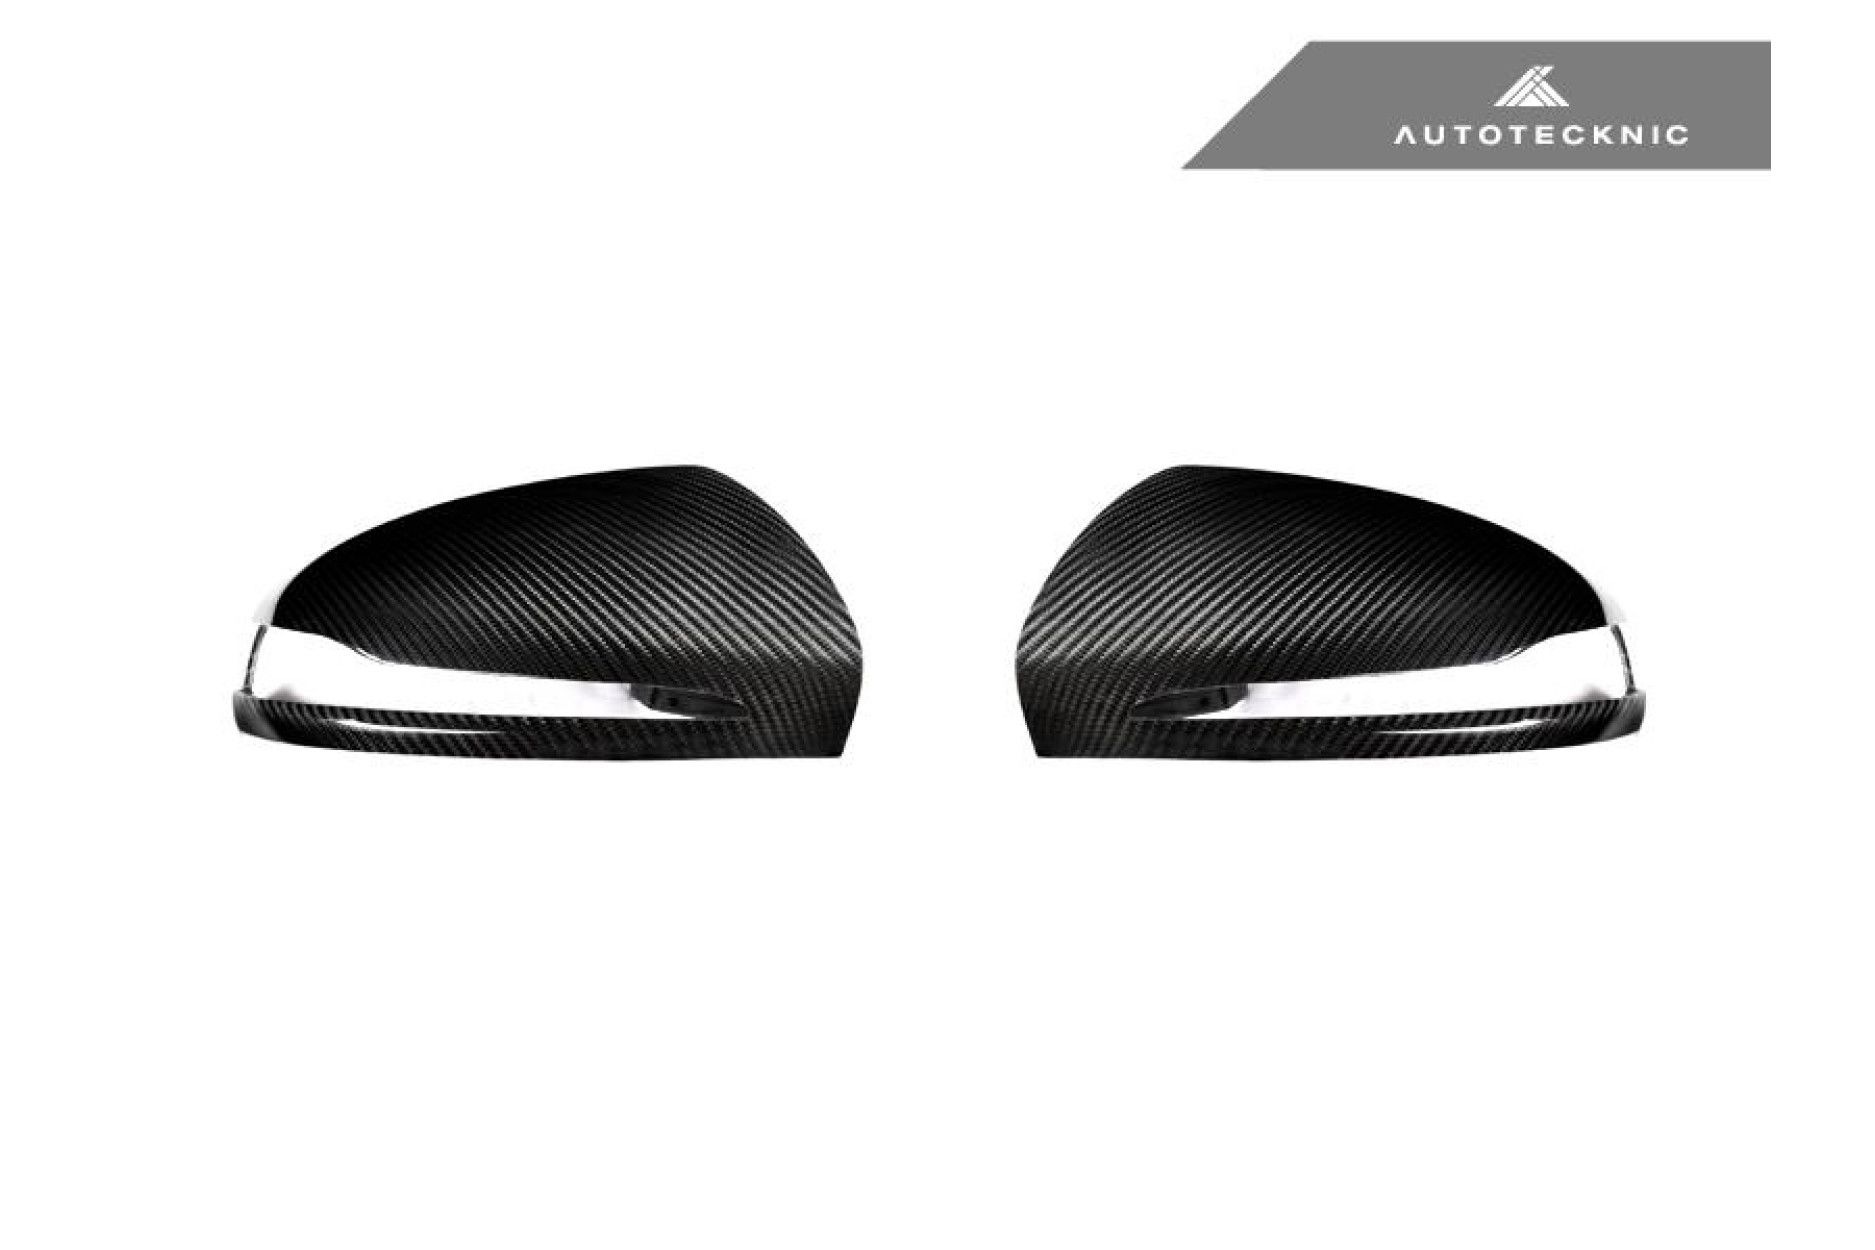 Autotecknic dry carbon replacement mirror caps for Mercedes Benz C-Klasse|E-Klasse|S-Klasse W205|W213|W222